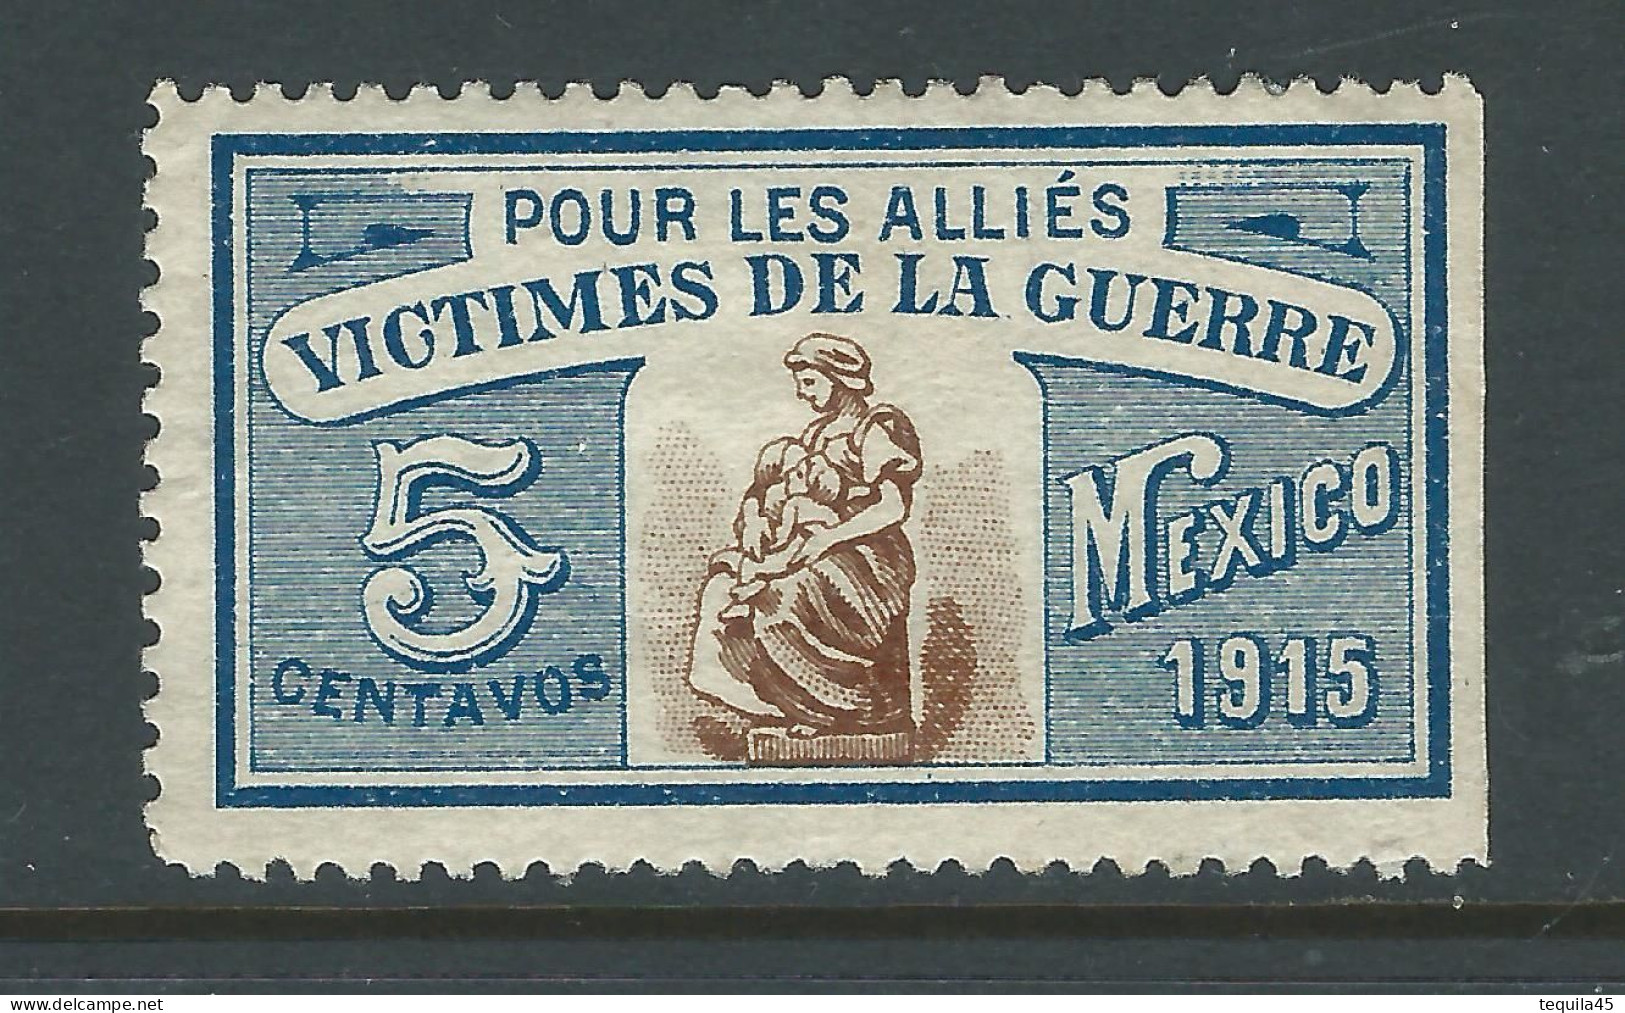 VIGNETTE CROIX-ROUGE Non DELANDRE FRANCE Comité De MEXICO 1915 WWI WW1 Cinderella Poster Stamp 1914 1918 War - Croix Rouge